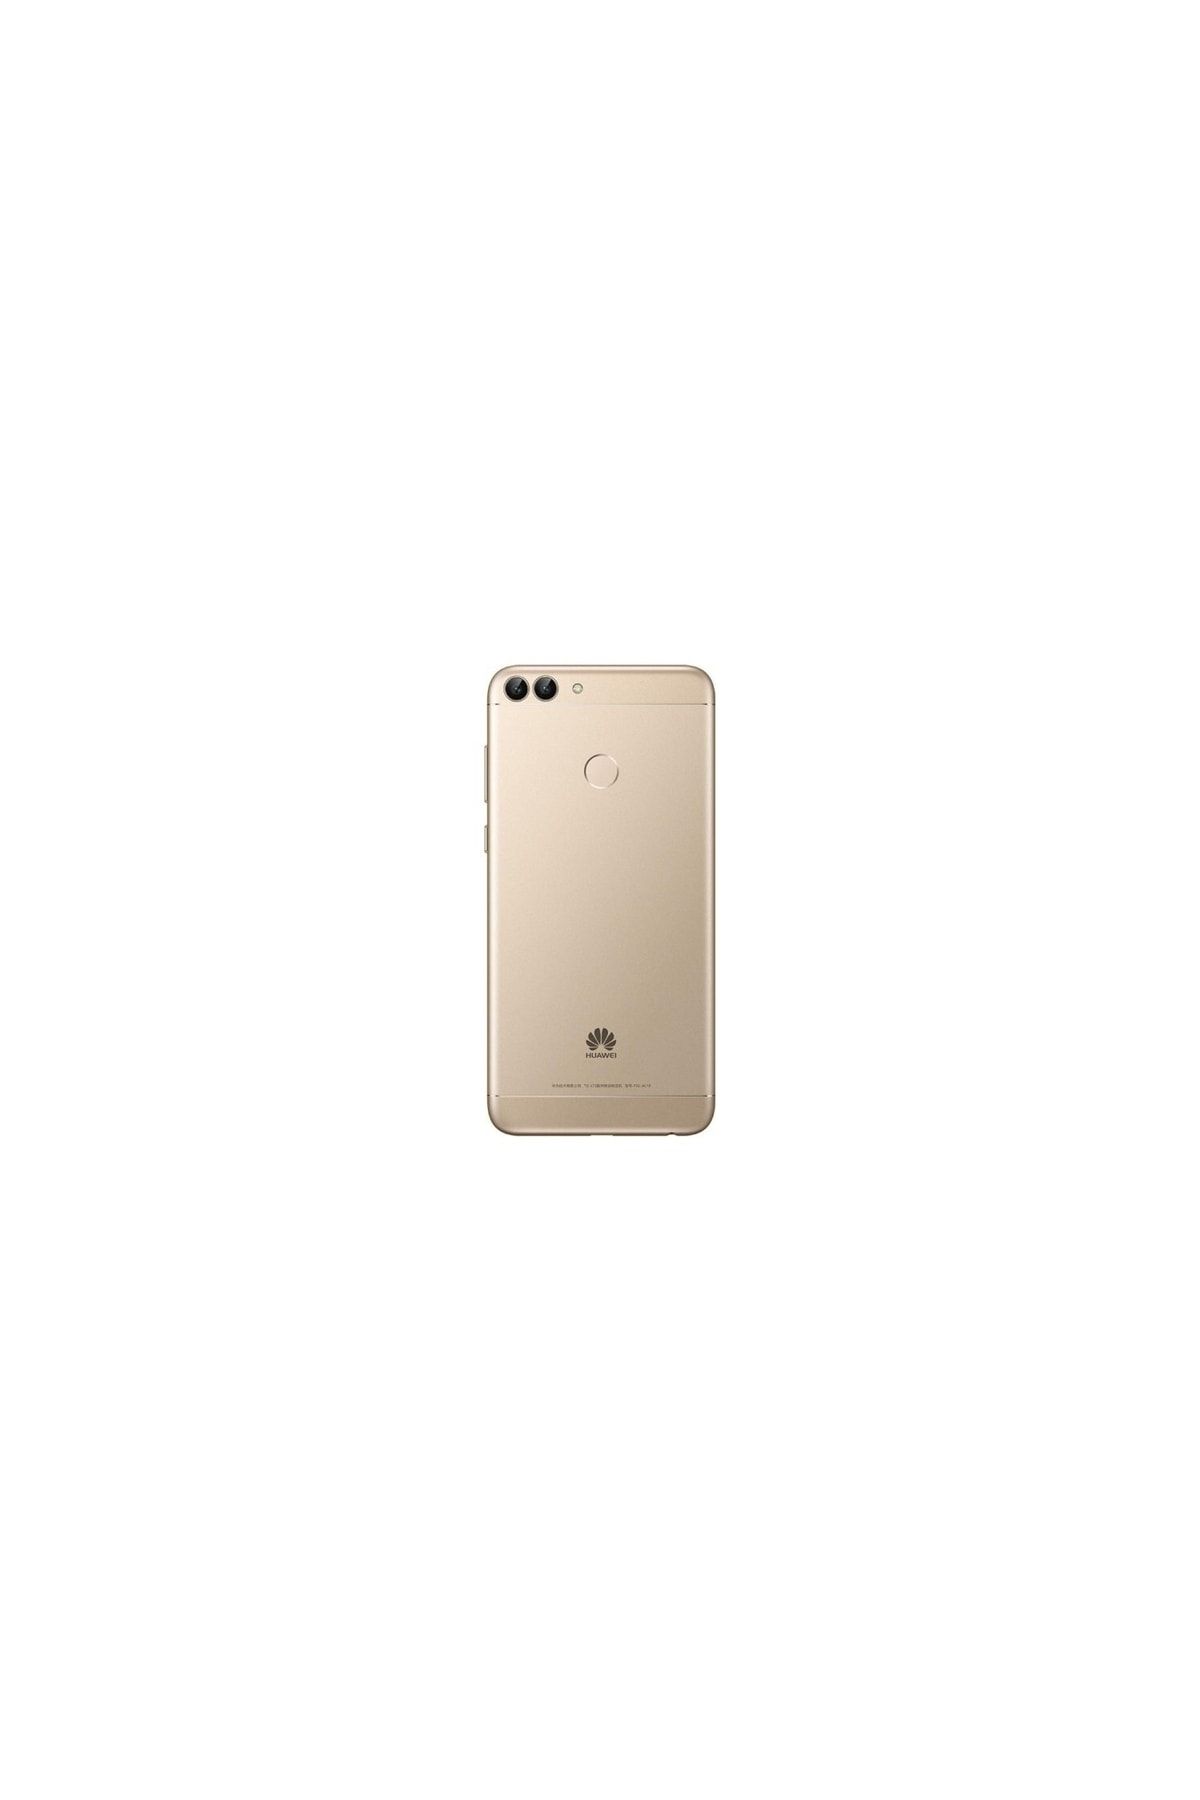 Huawei Yenilenmiş P Smart 2018 32 GB Gold